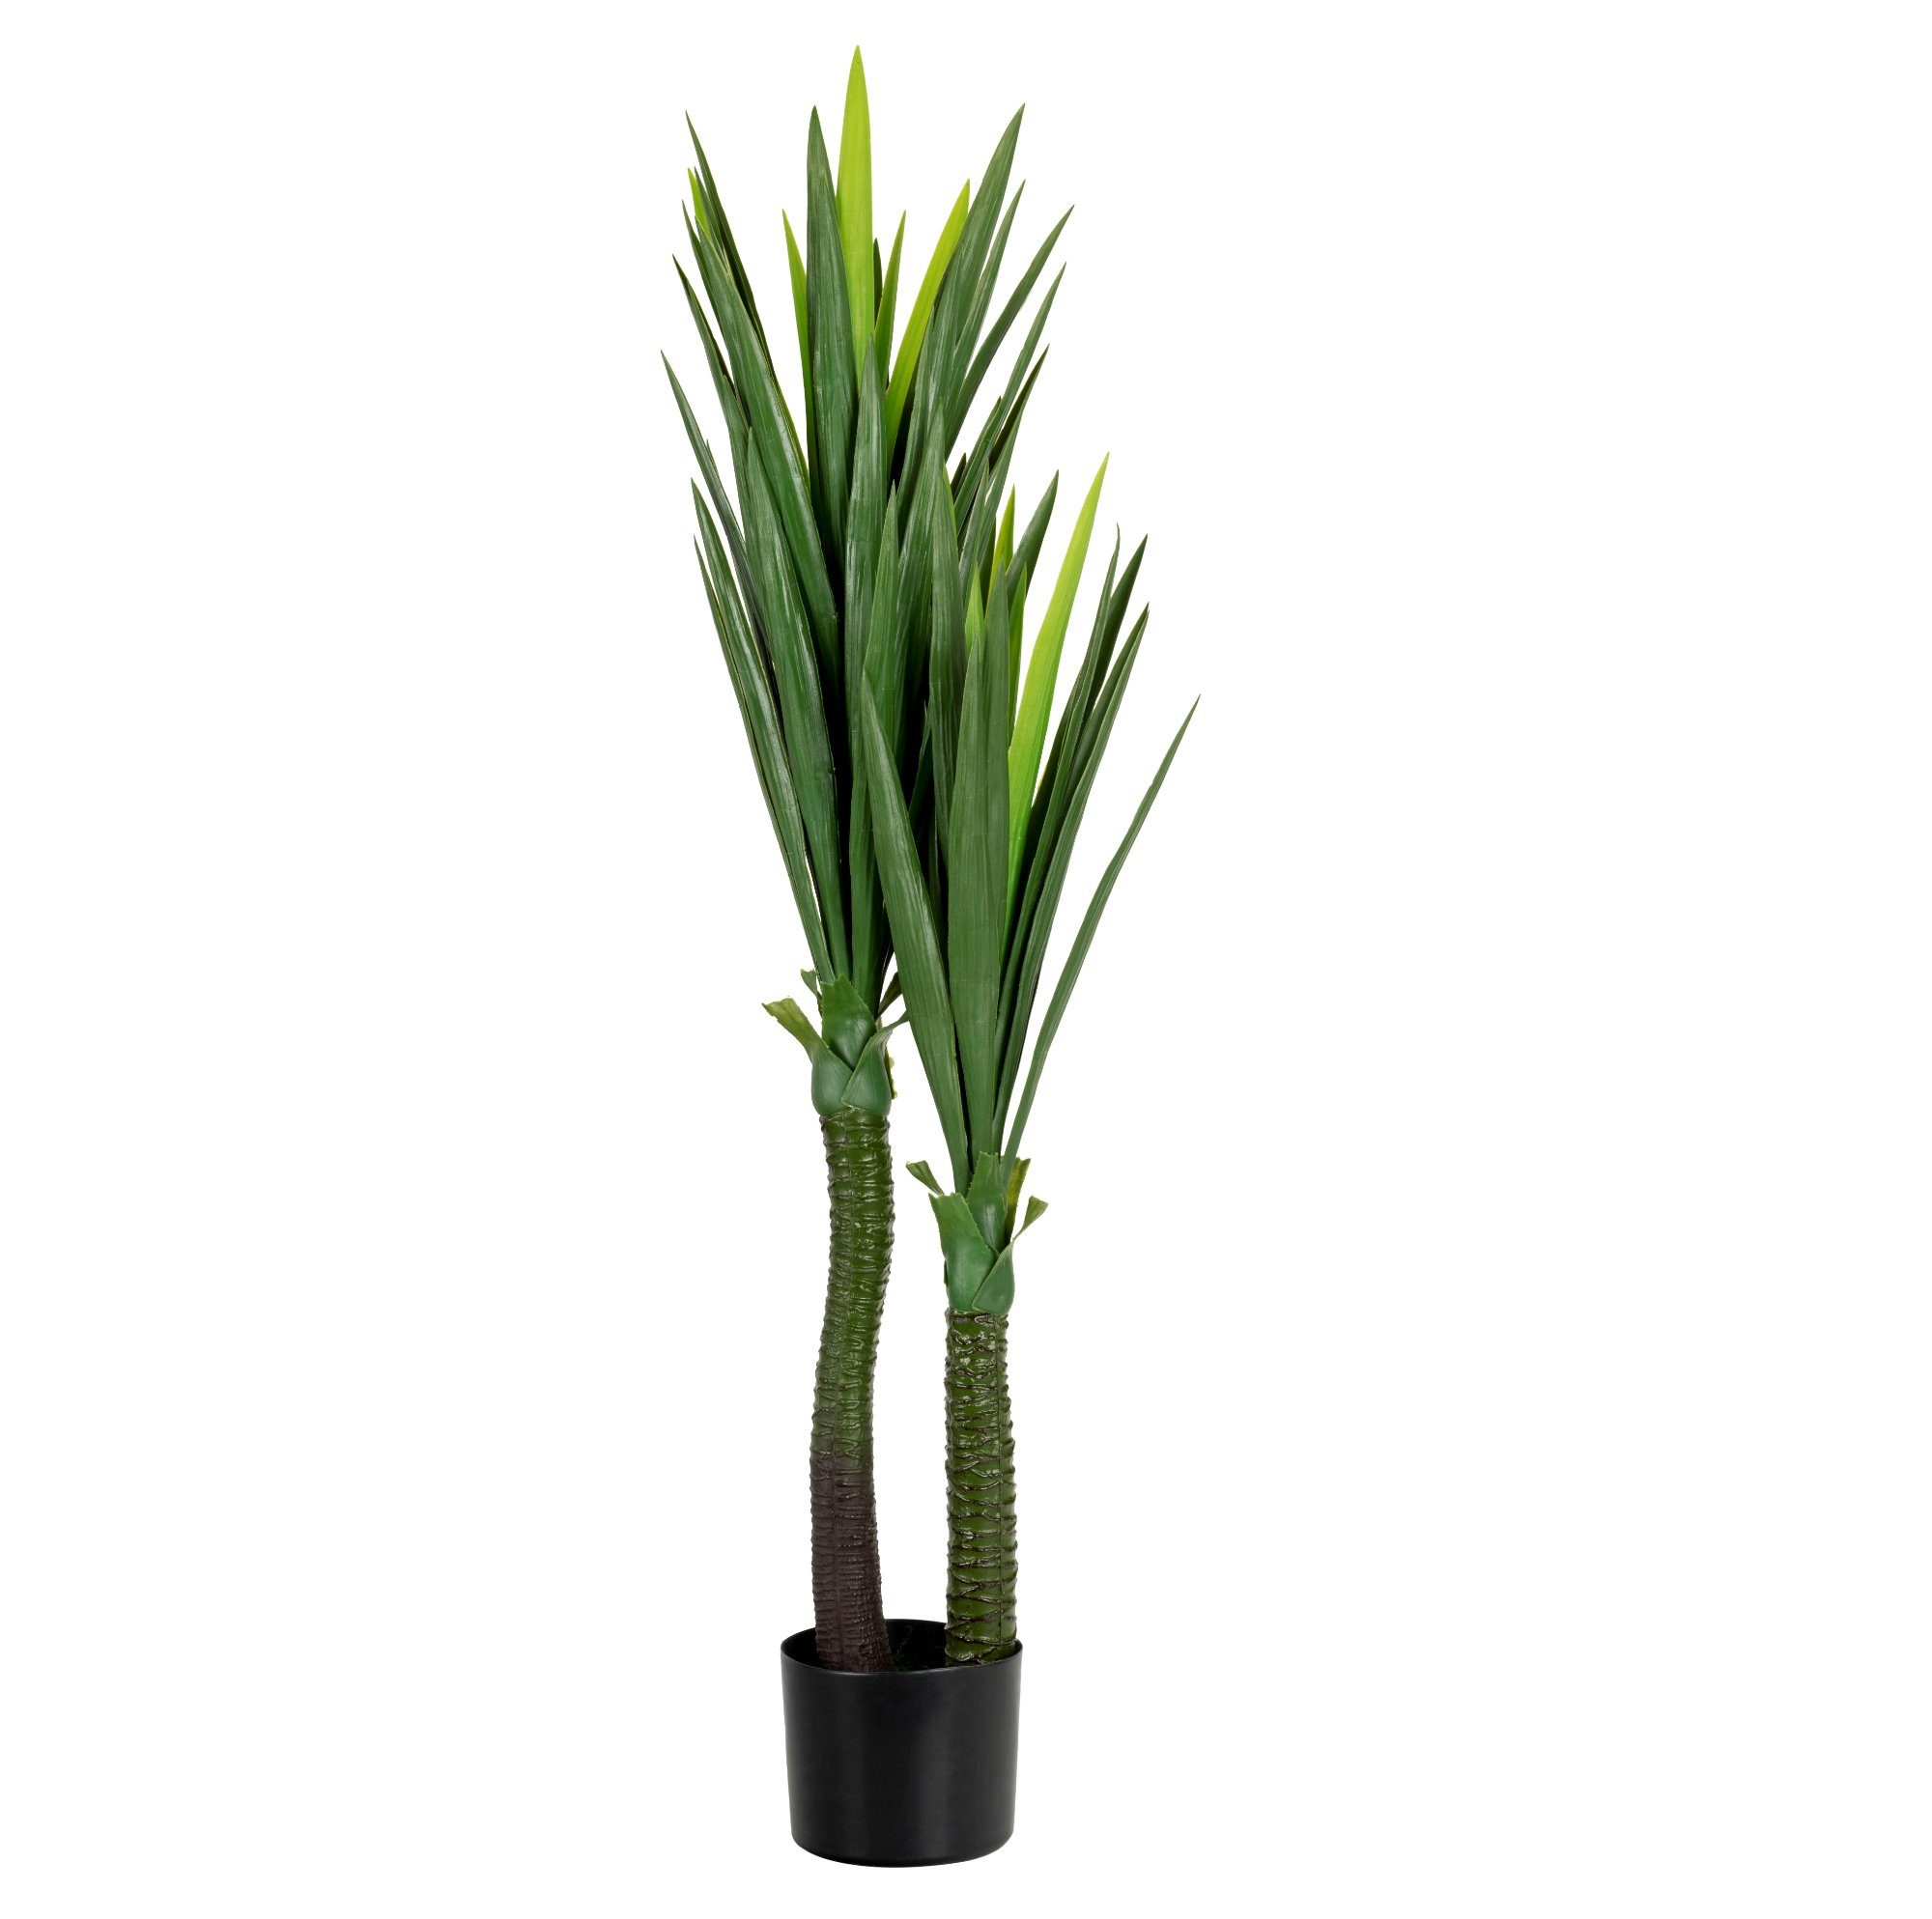 Kunstpalme YU-115 Palme Kunstpflanze Yuccapalme, joycraft, Höhe 120 cm, künstliche Palmllilie im Kunststofftopf